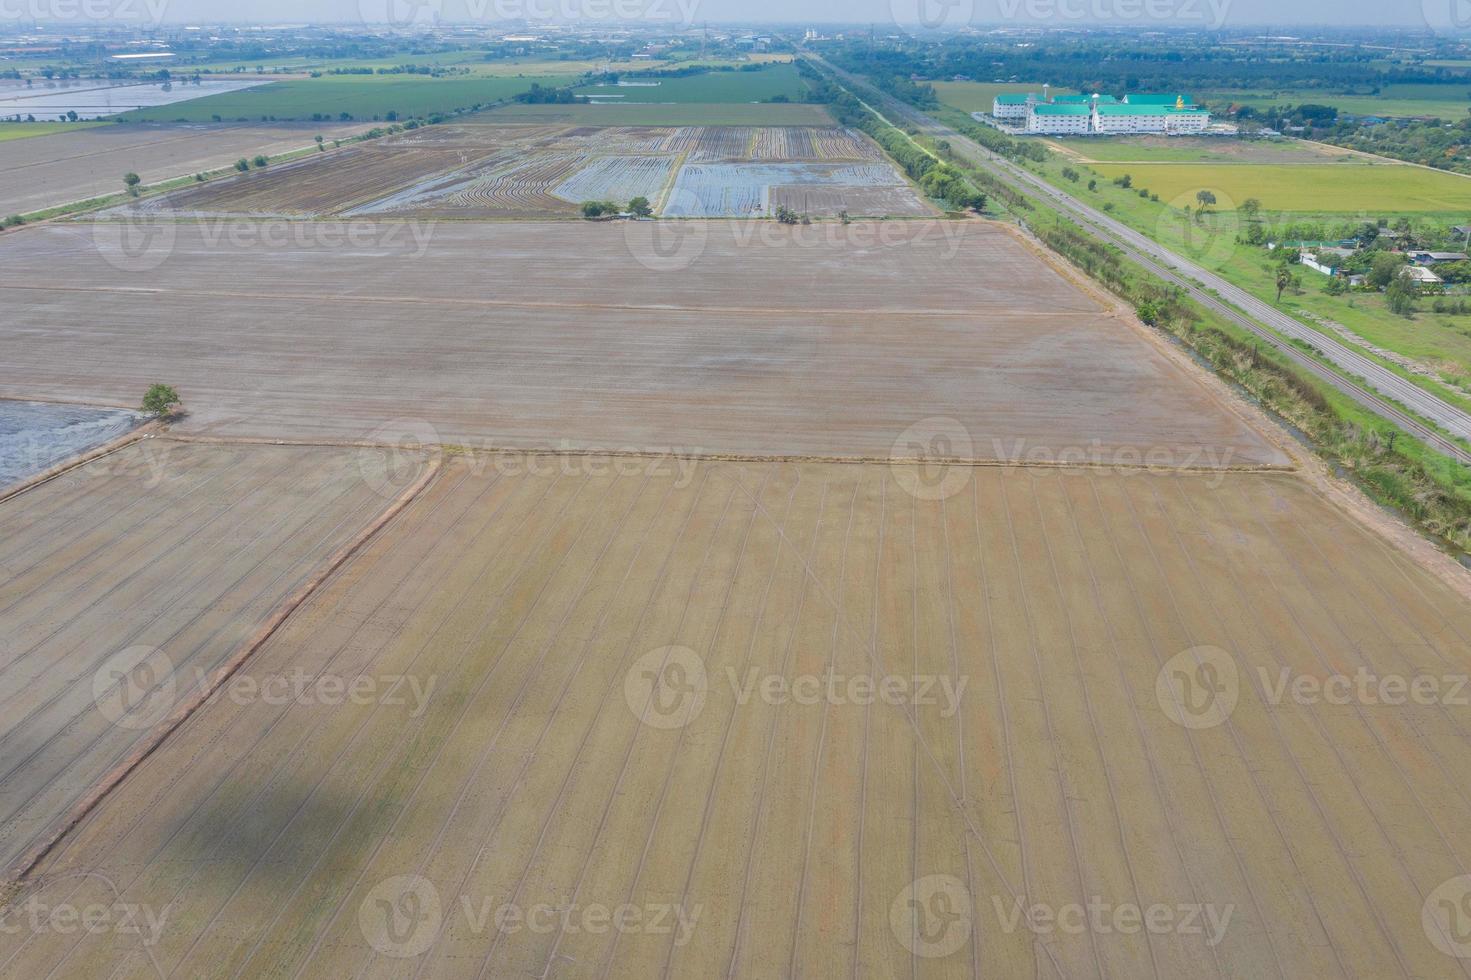 champ de riz avec paysage vert nature fond photo